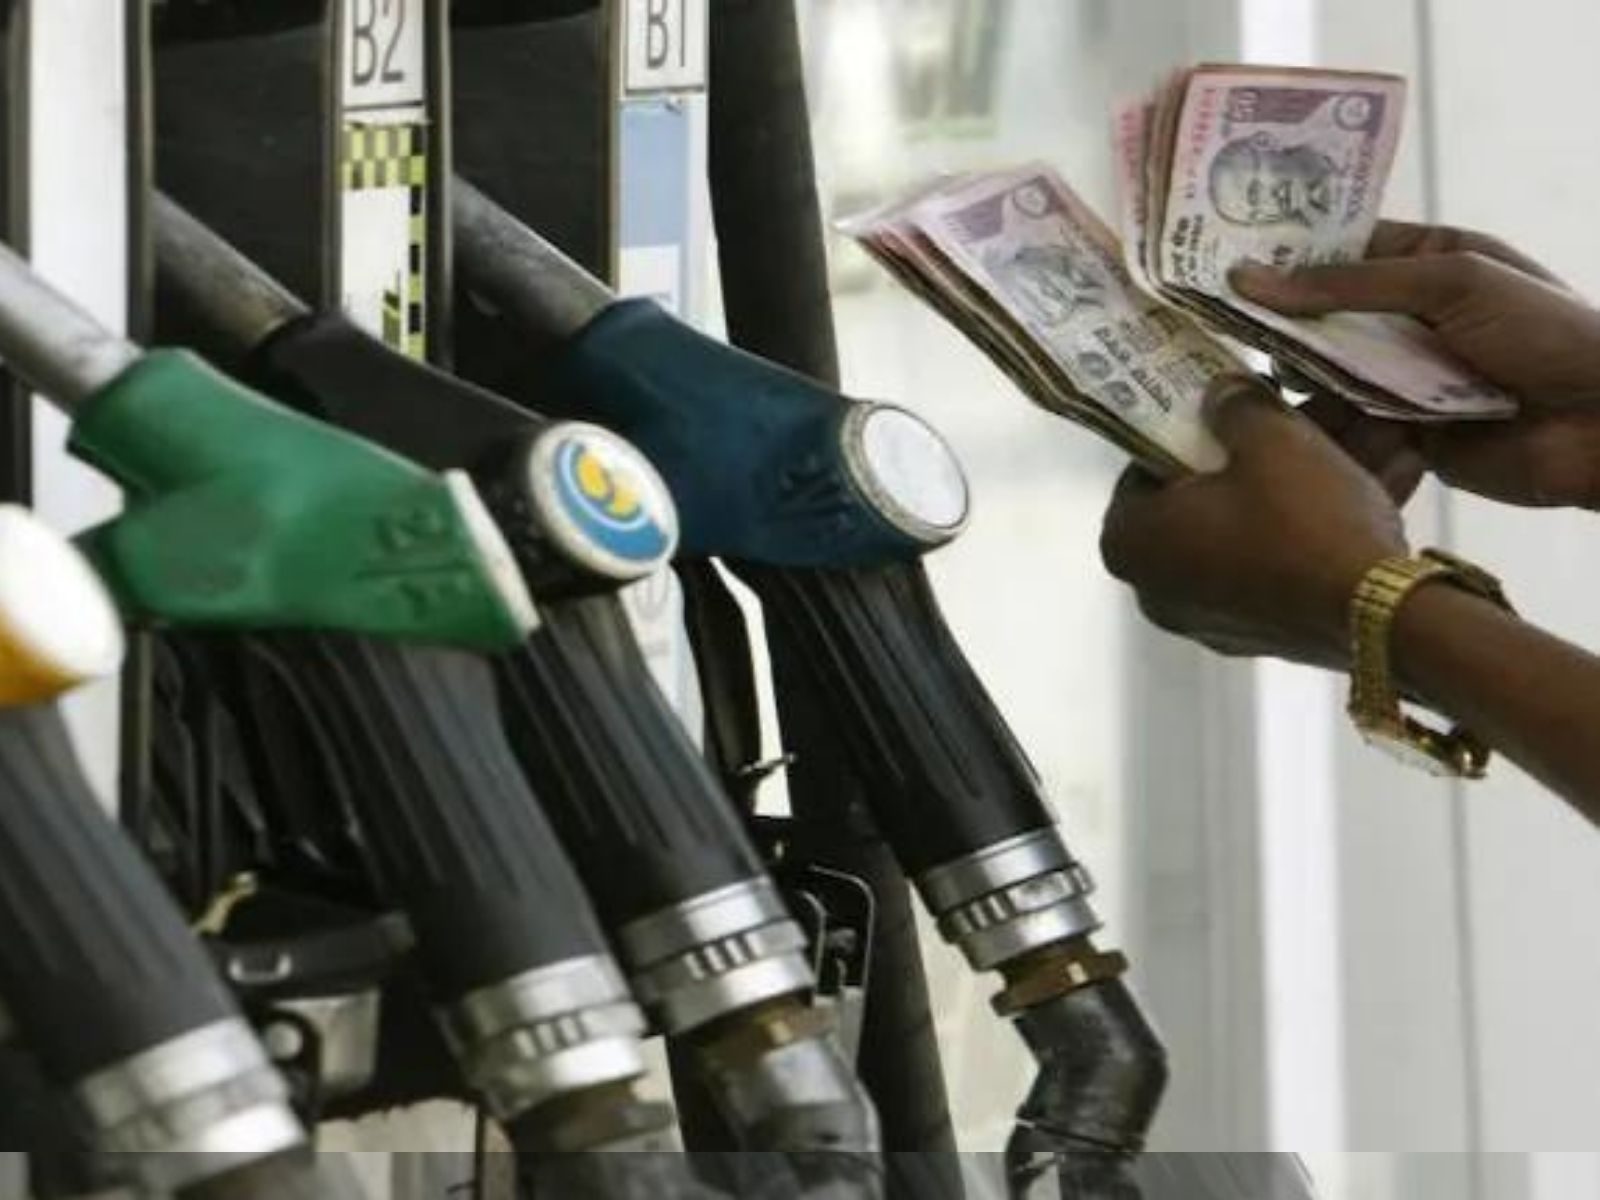 Petrol Diesel Prices: ਪੈਟਰੋਲ-ਡੀਜ਼ਲ ਦੀਆਂ ਕੀਮਤਾਂ 'ਚ ਕਿੰਨਾ ਹੋਇਆ ਬਦਲਾਅ, ਪੜ੍ਹੋ ਇਹ ਖਾਸ ਖਬਰ 
